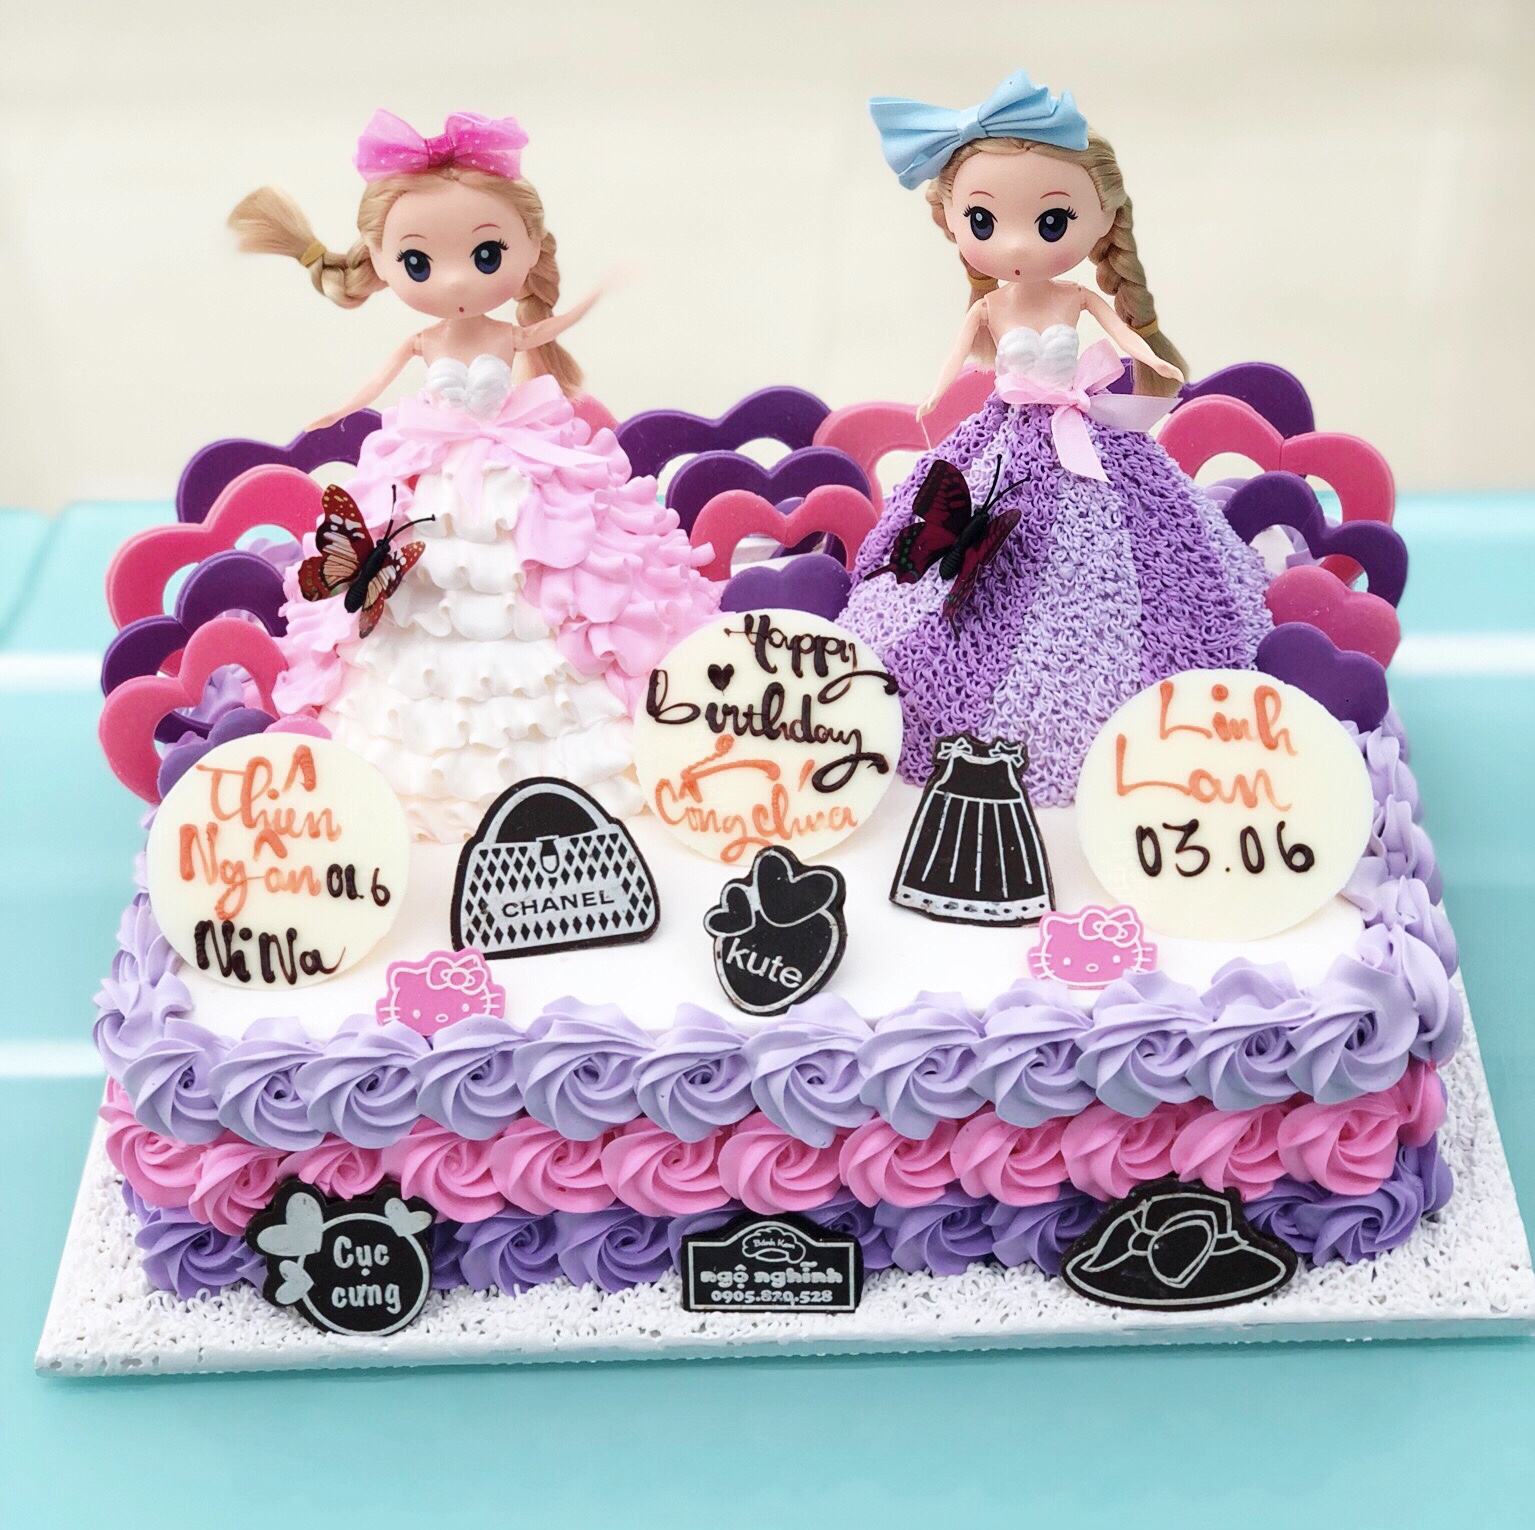 Chỉ cần nhìn vào những chiếc bánh sinh nhật công chúa Chibi xinh đẹp này, bạn sẽ cảm thấy muốn cắn ngay một miếng. Hãy để mẹo làm bánh đầy quyến rũ này làm cho ngày sinh nhật của bạn thêm đáng nhớ.